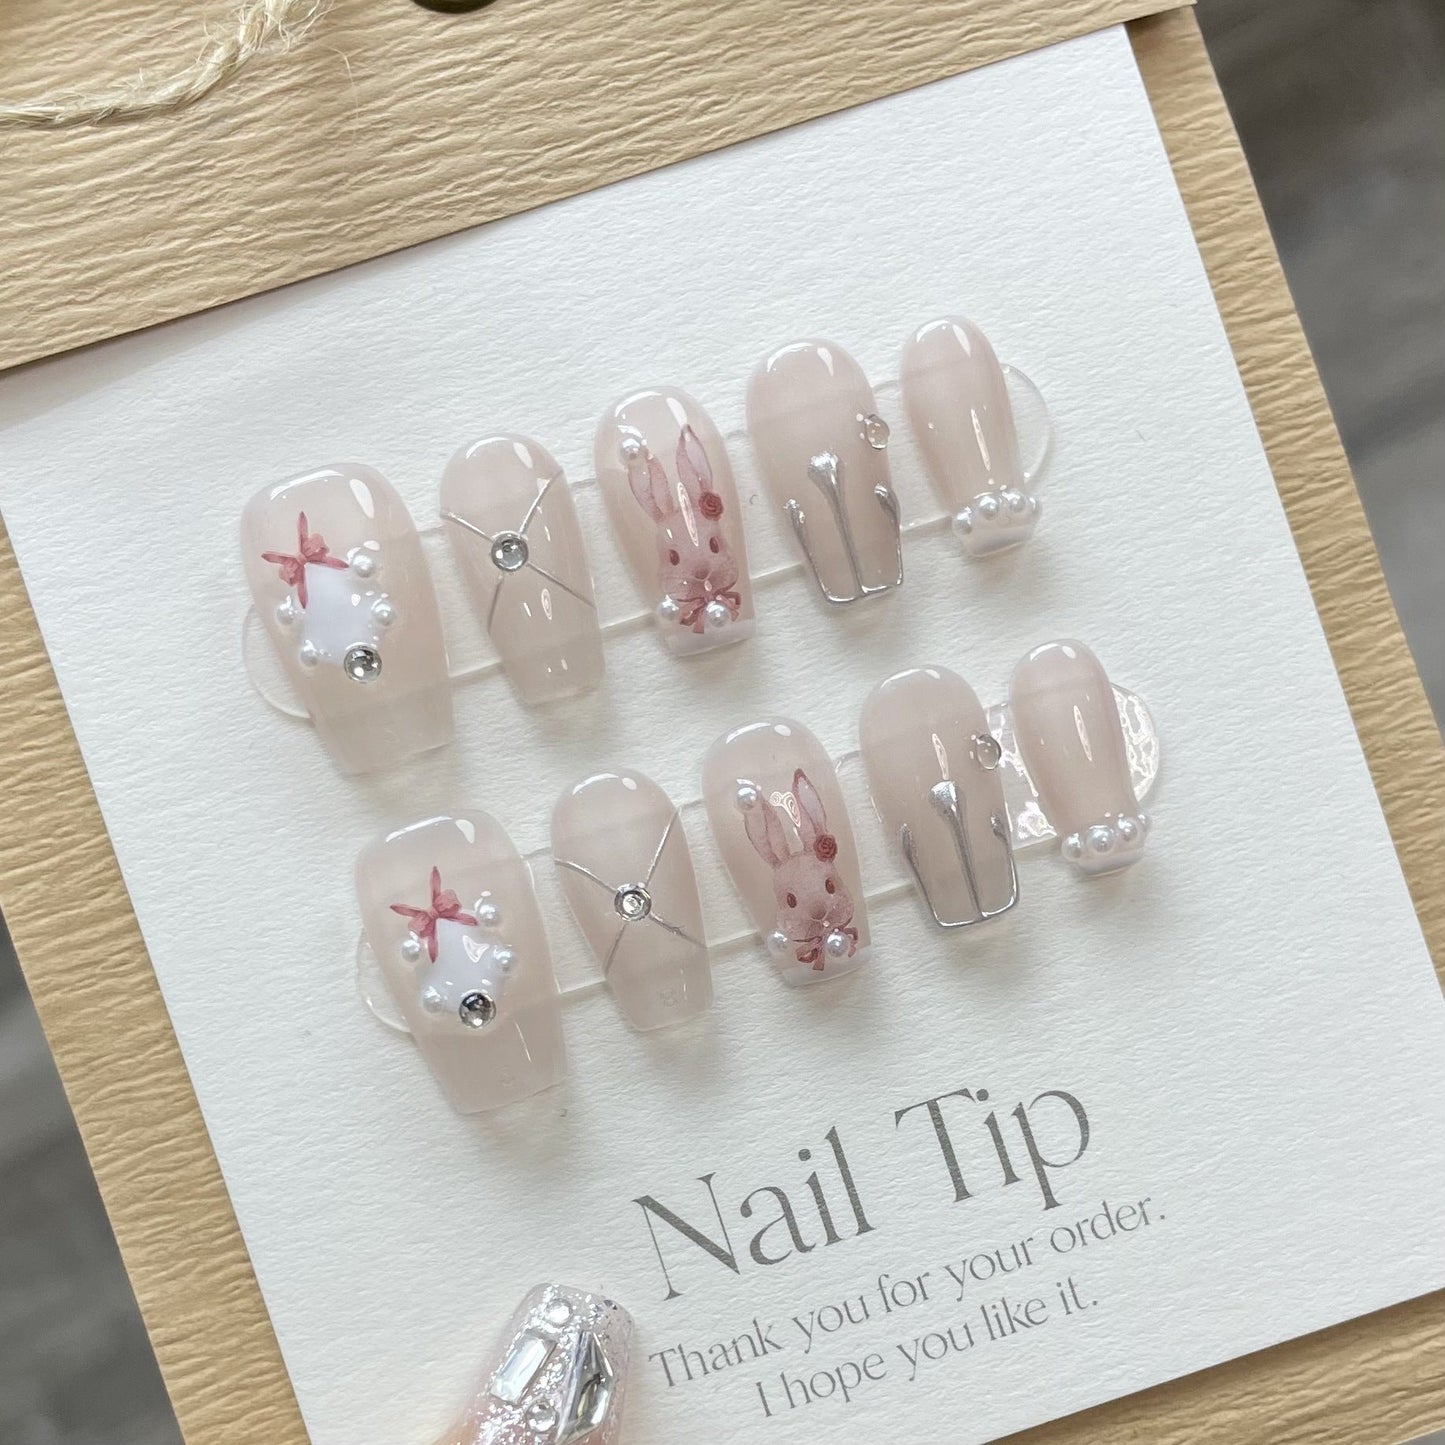 734 konijnenstijl press-on-nagels 100% handgemaakte kunstnagels nude kleur roze